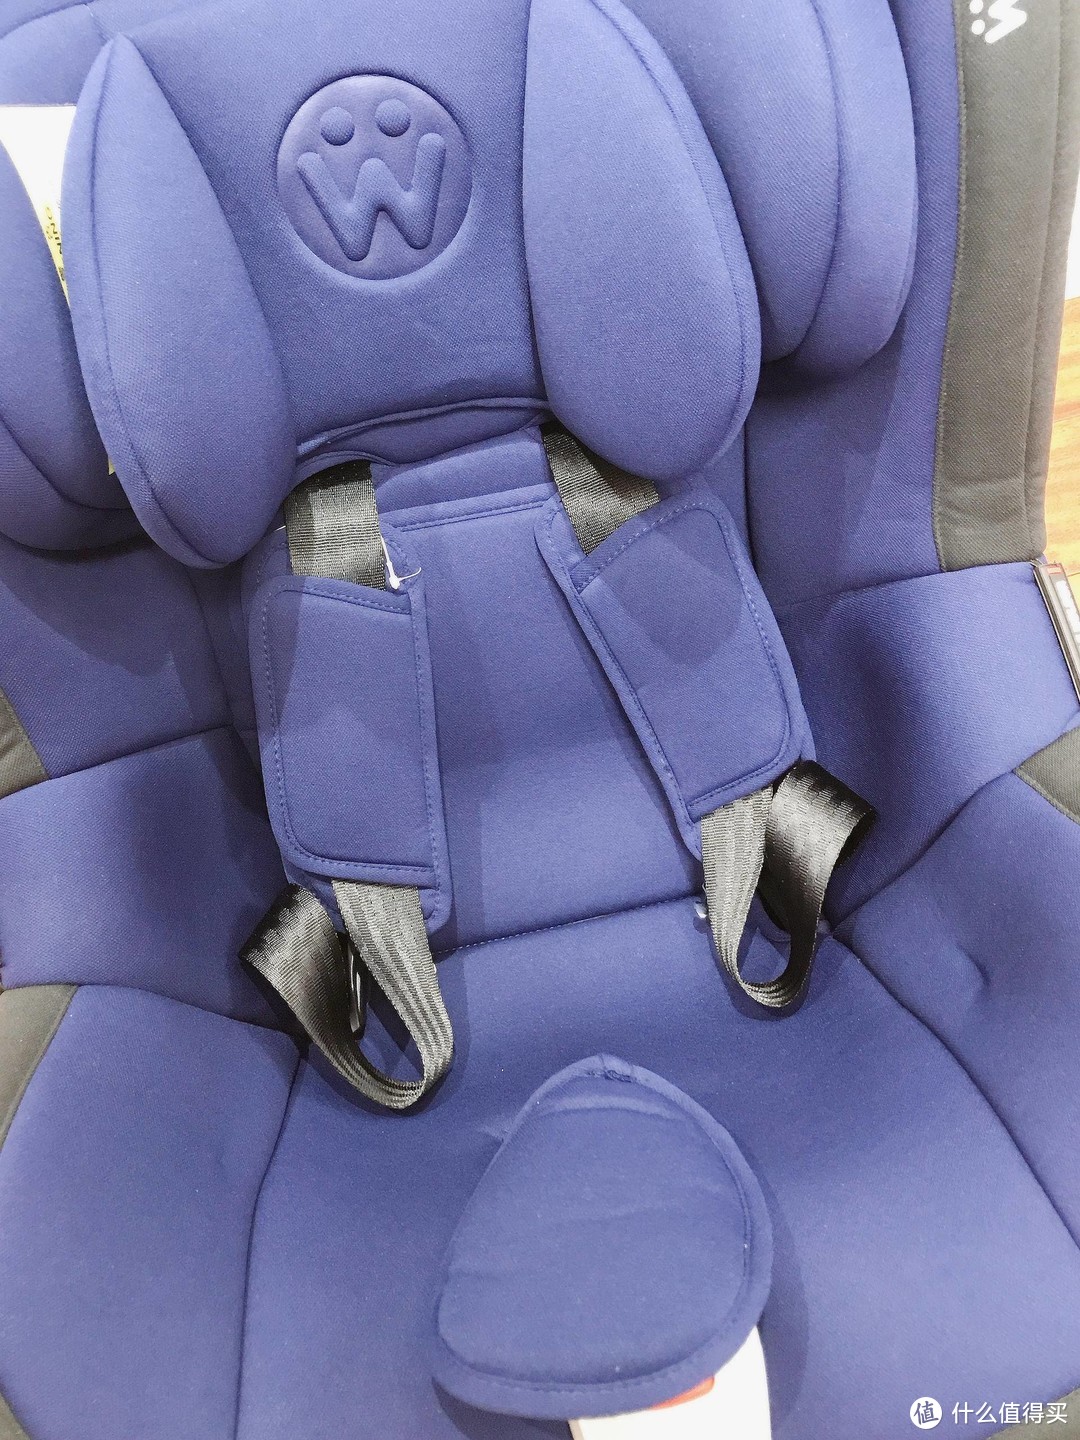 从零开始的安全座椅选择，惠尔顿茧之爱安全座椅开箱